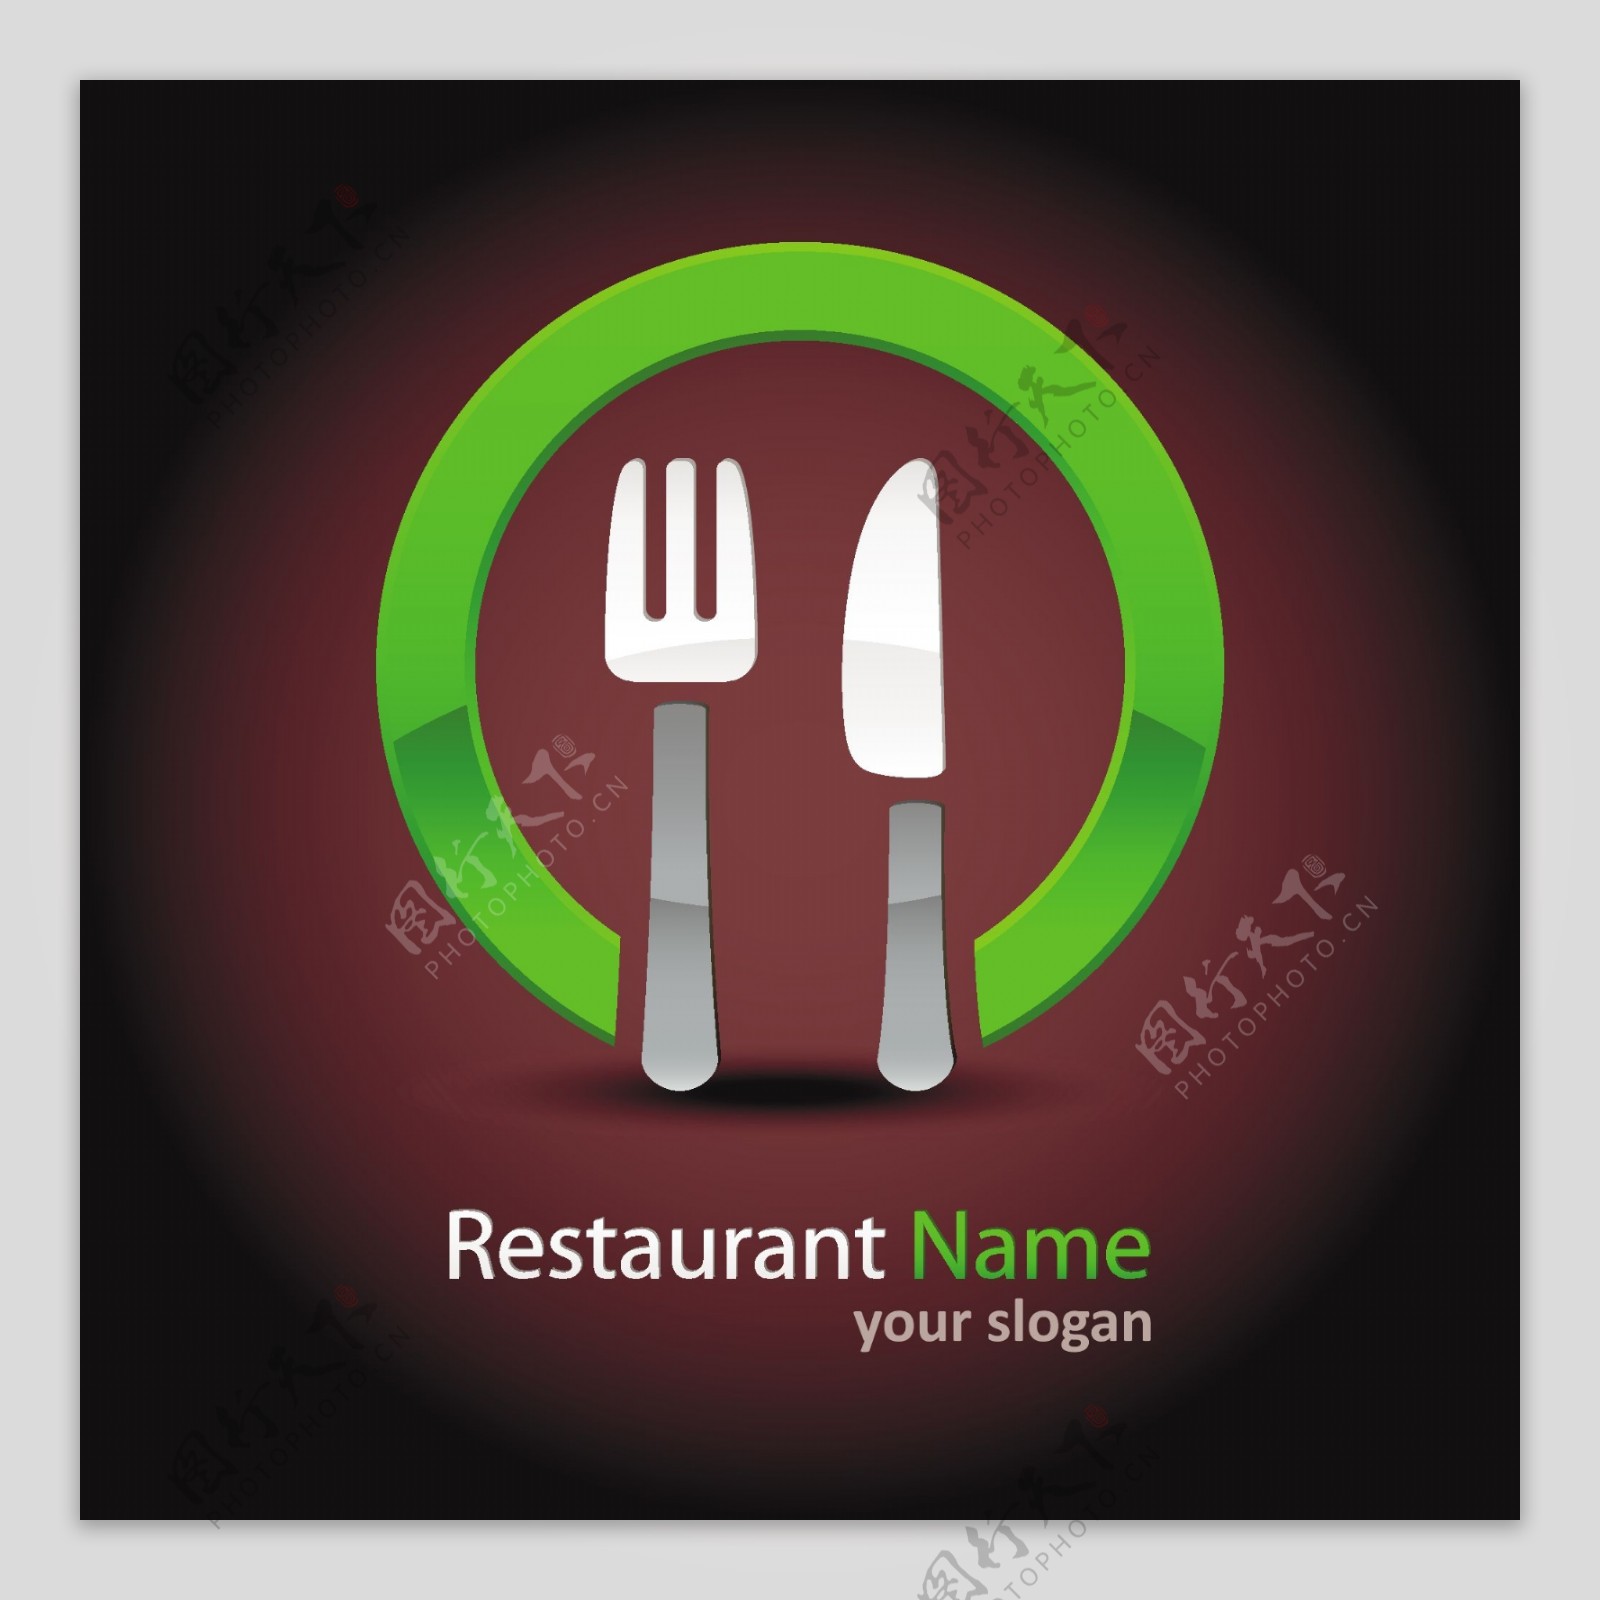 创意餐厅标志矢量素材